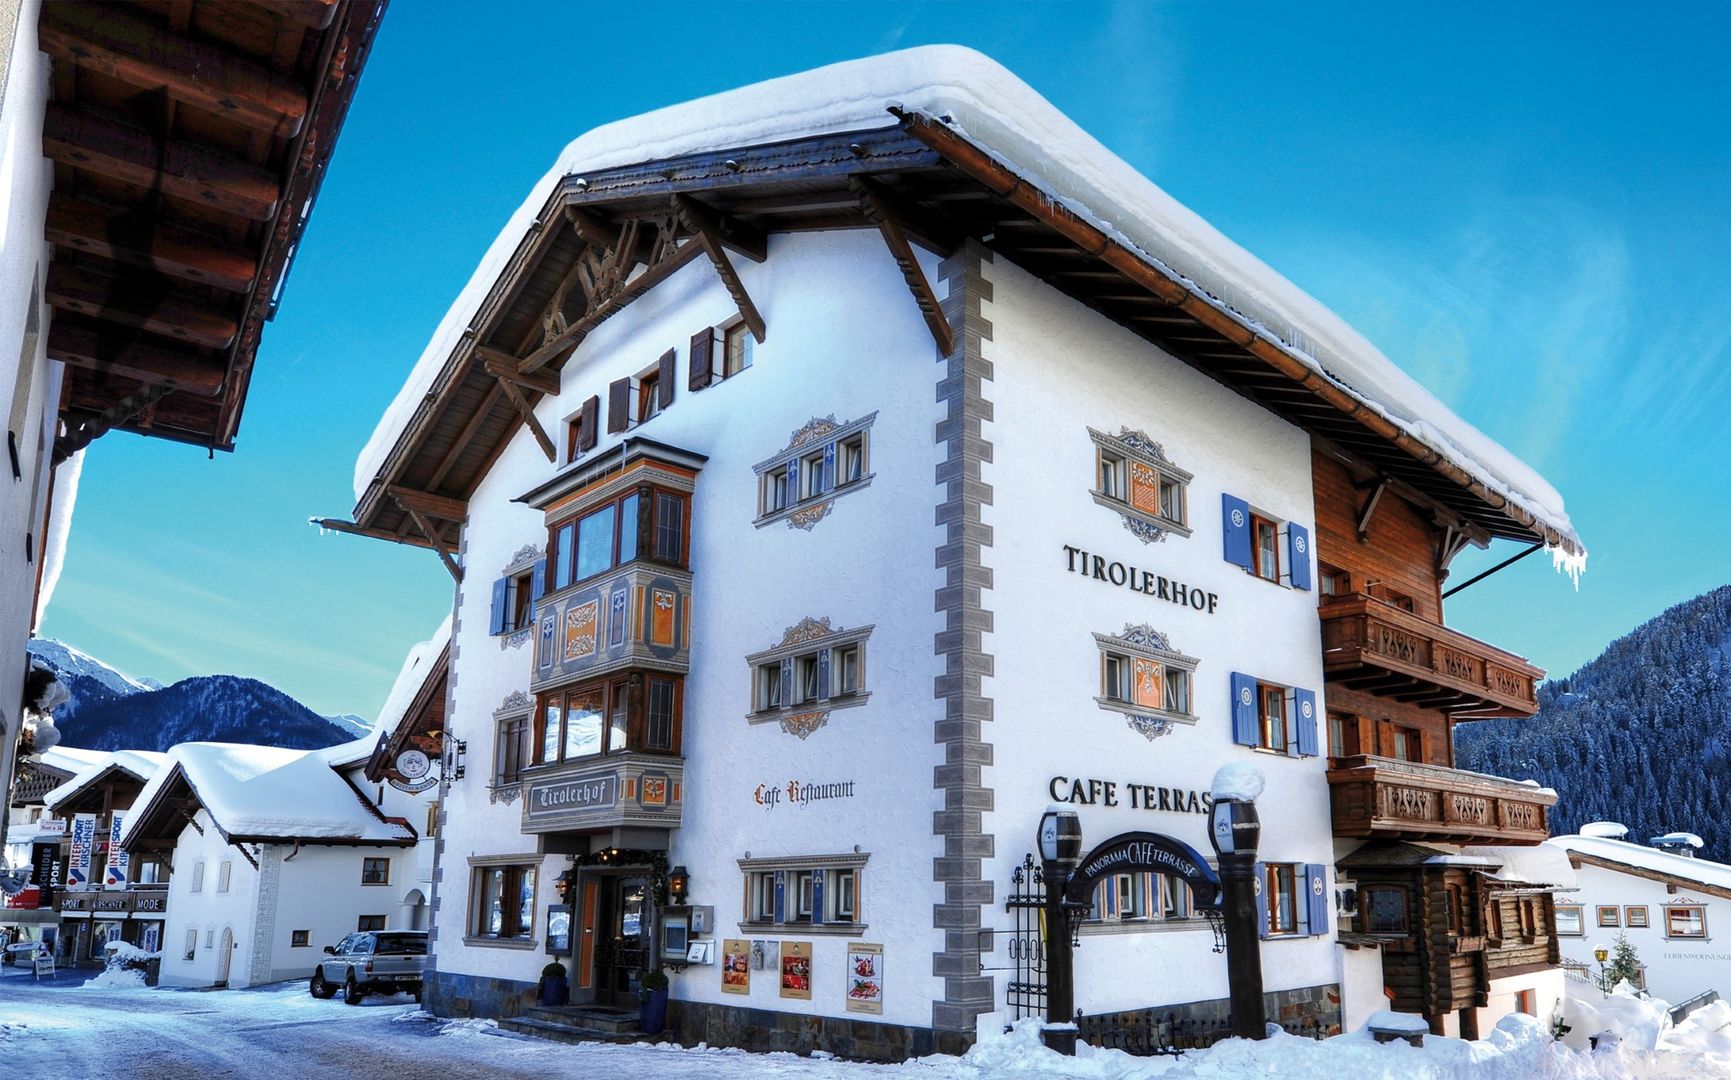  Fiss - Hotel Tirolerhof